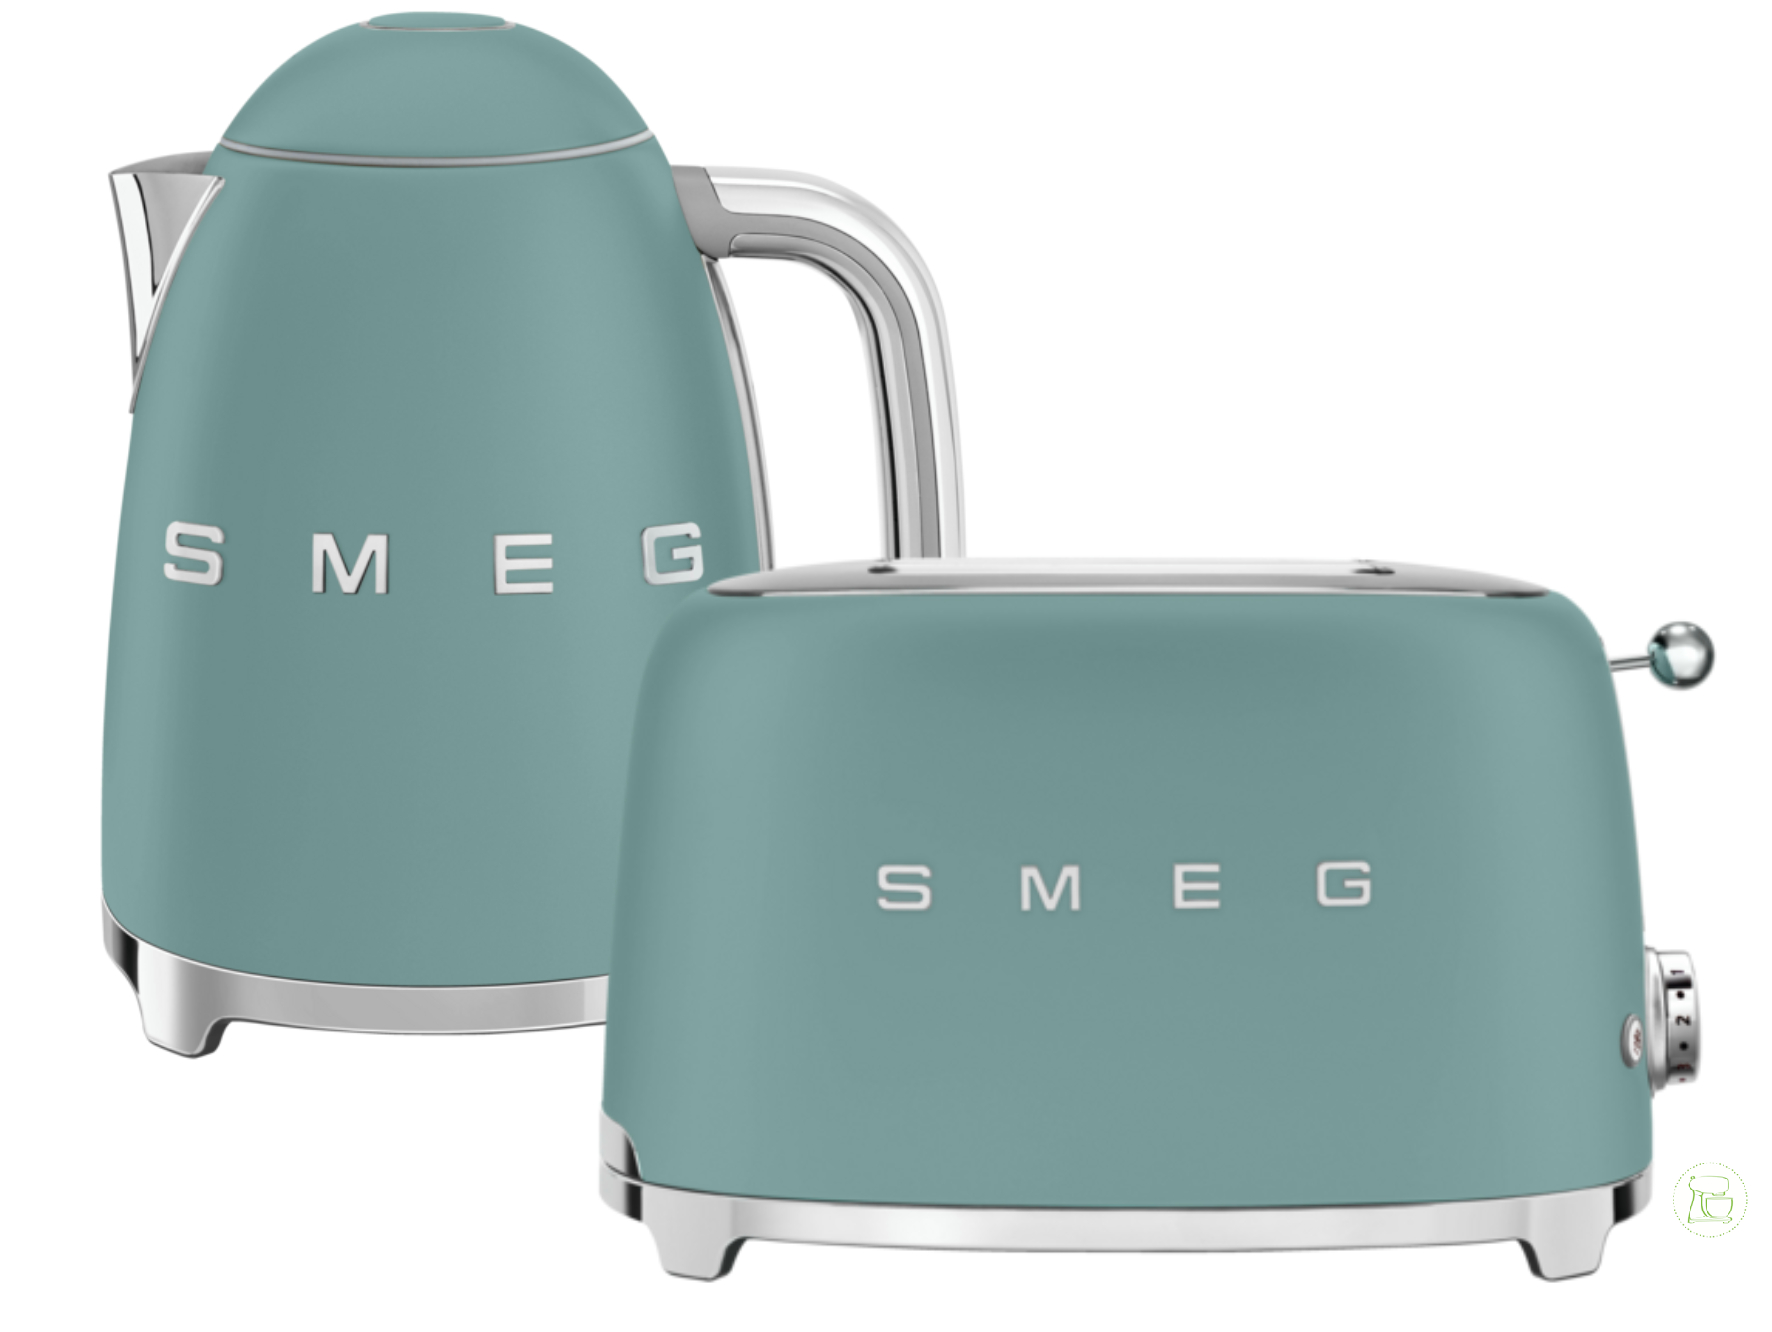 SMEG Wasserkocher - Toaster Set Emerald Green